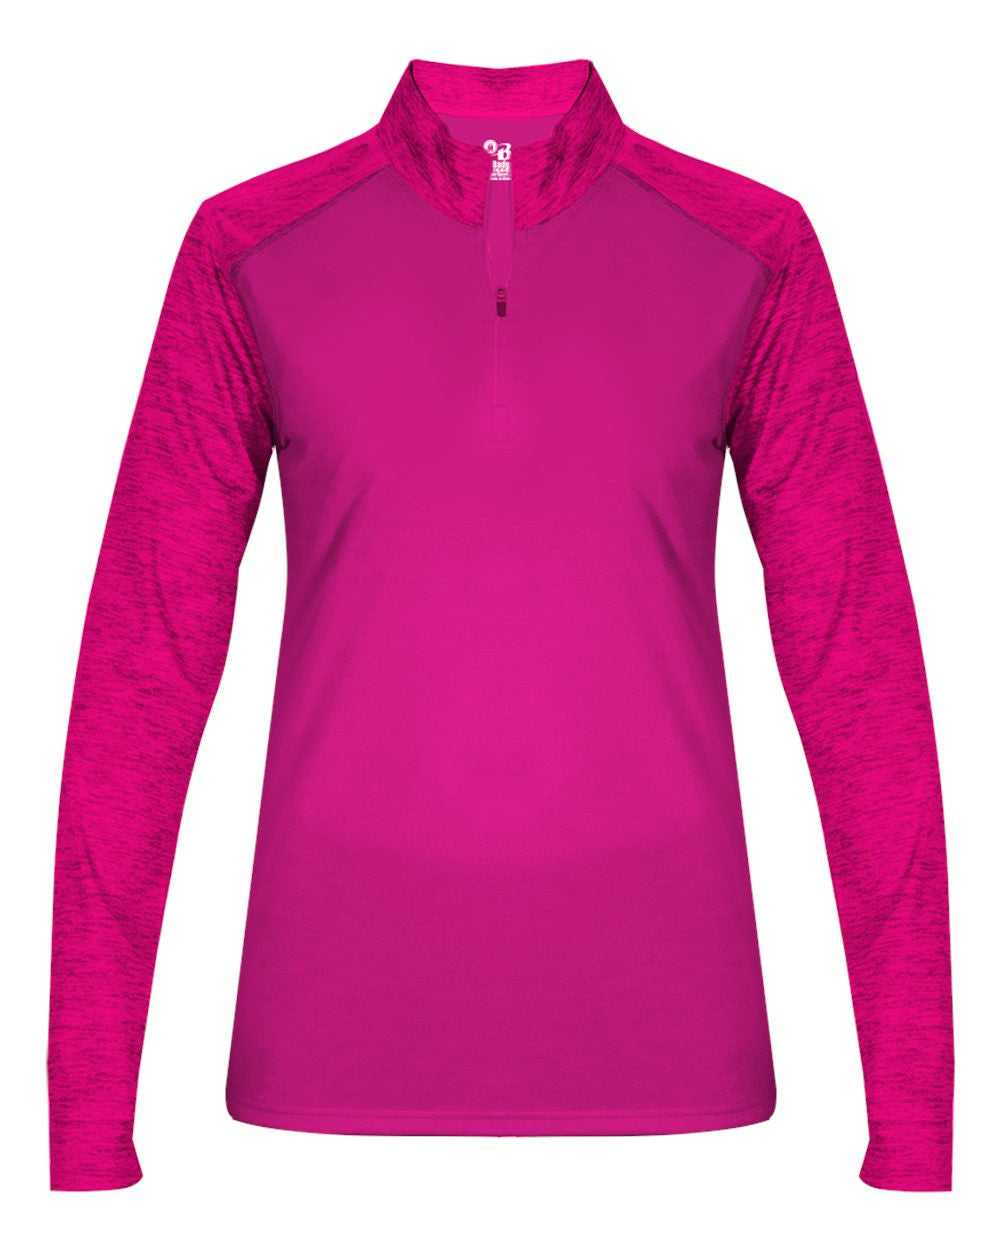 Badger Sport 4179 Sport Tonal Blend Ladies 1/4 Zip - Hot Pink Hot Pink Tonal Blend - HIT a Double - 1